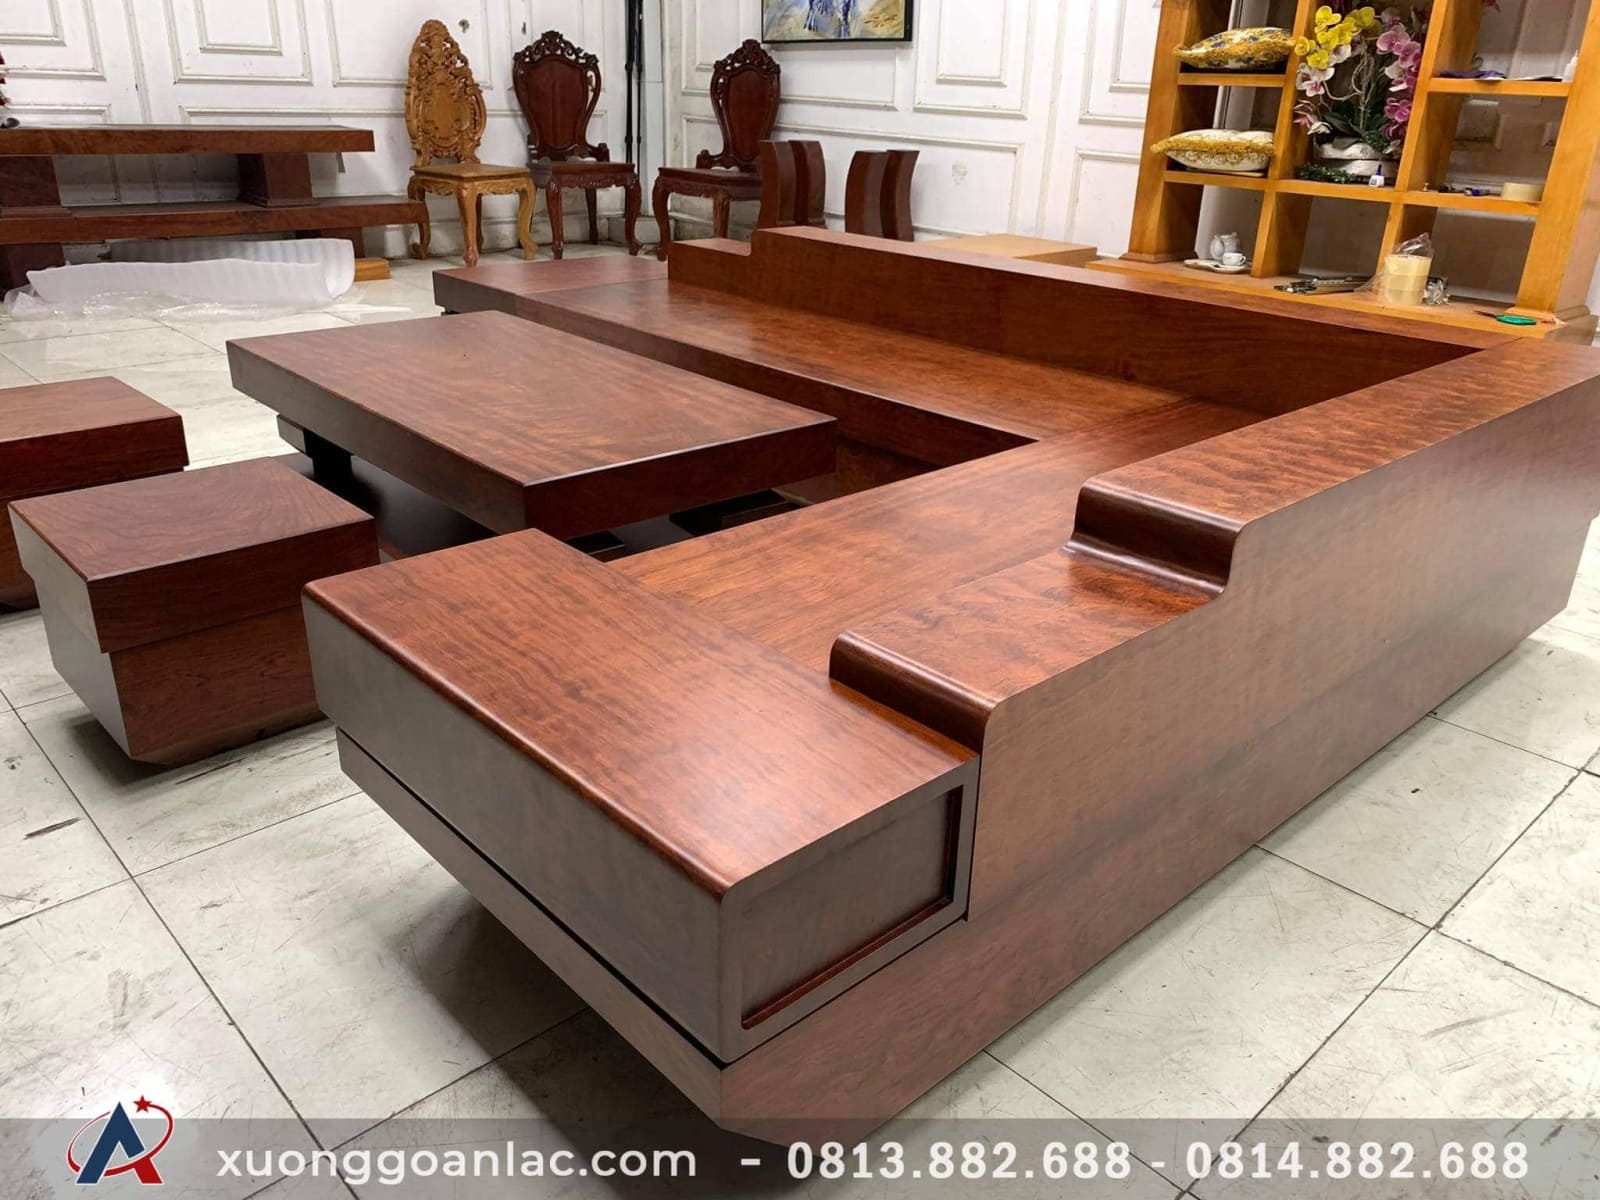 Bộ sưu tập Sofa gỗ Nam Định được làm từ chất liệu gỗ cao cấp